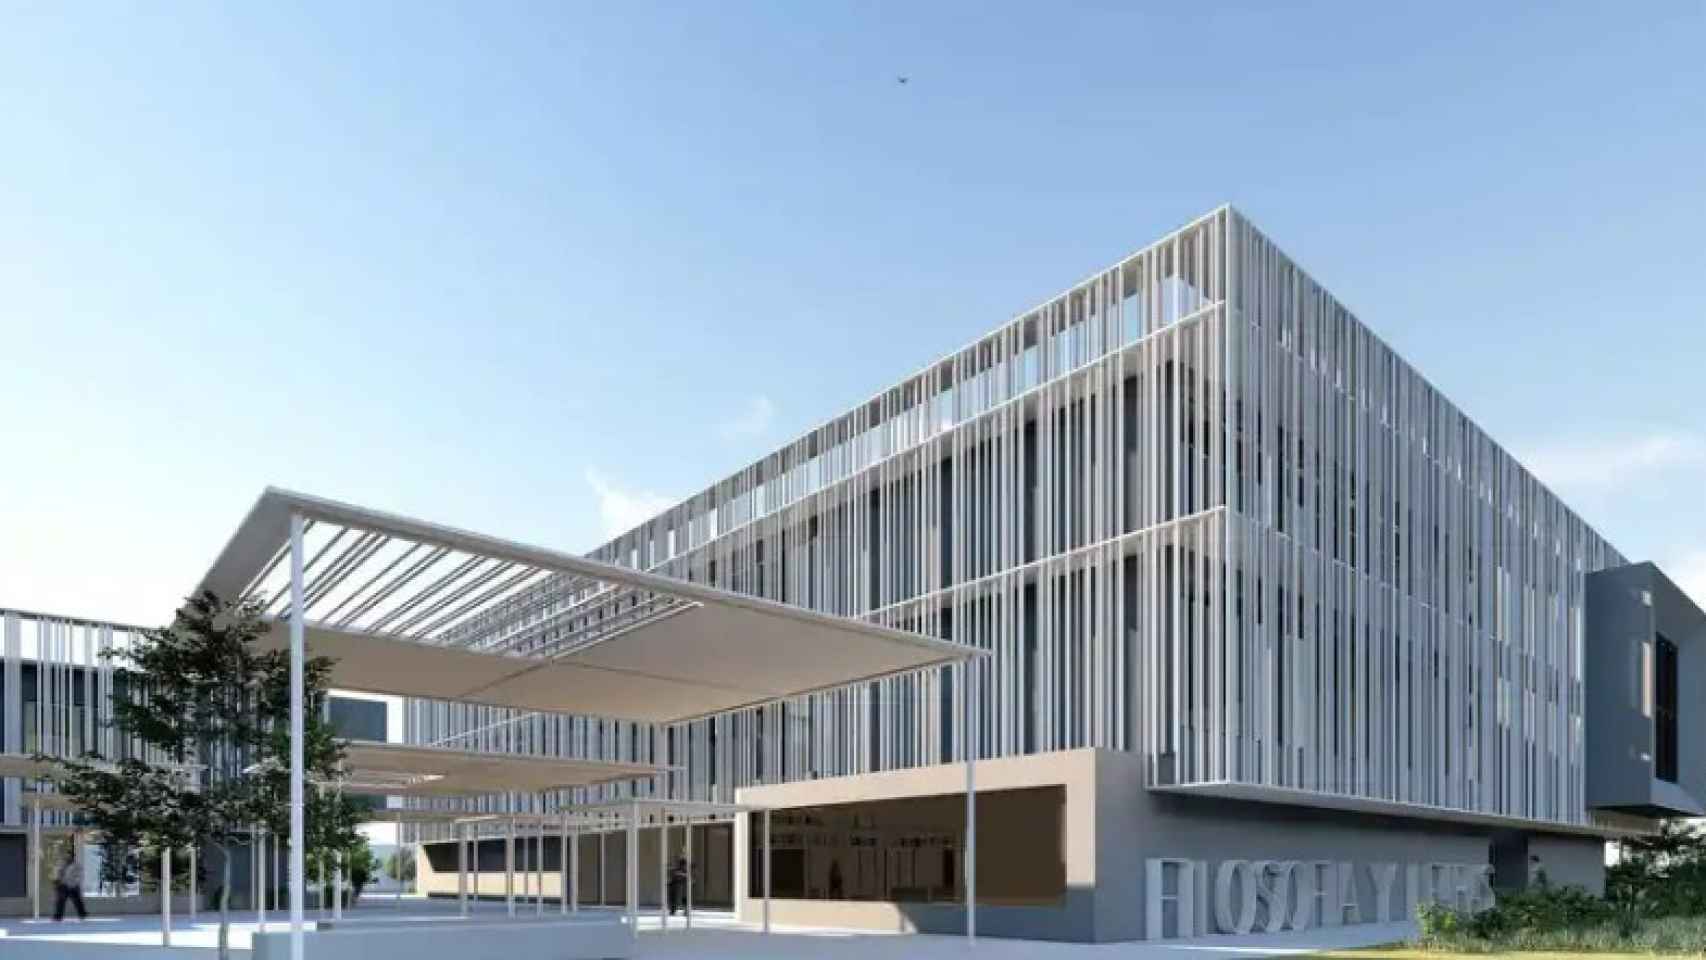 Diseño previsto en la ampliación de la Facultad de Filosofía y Letras de la Universidad de Málaga.